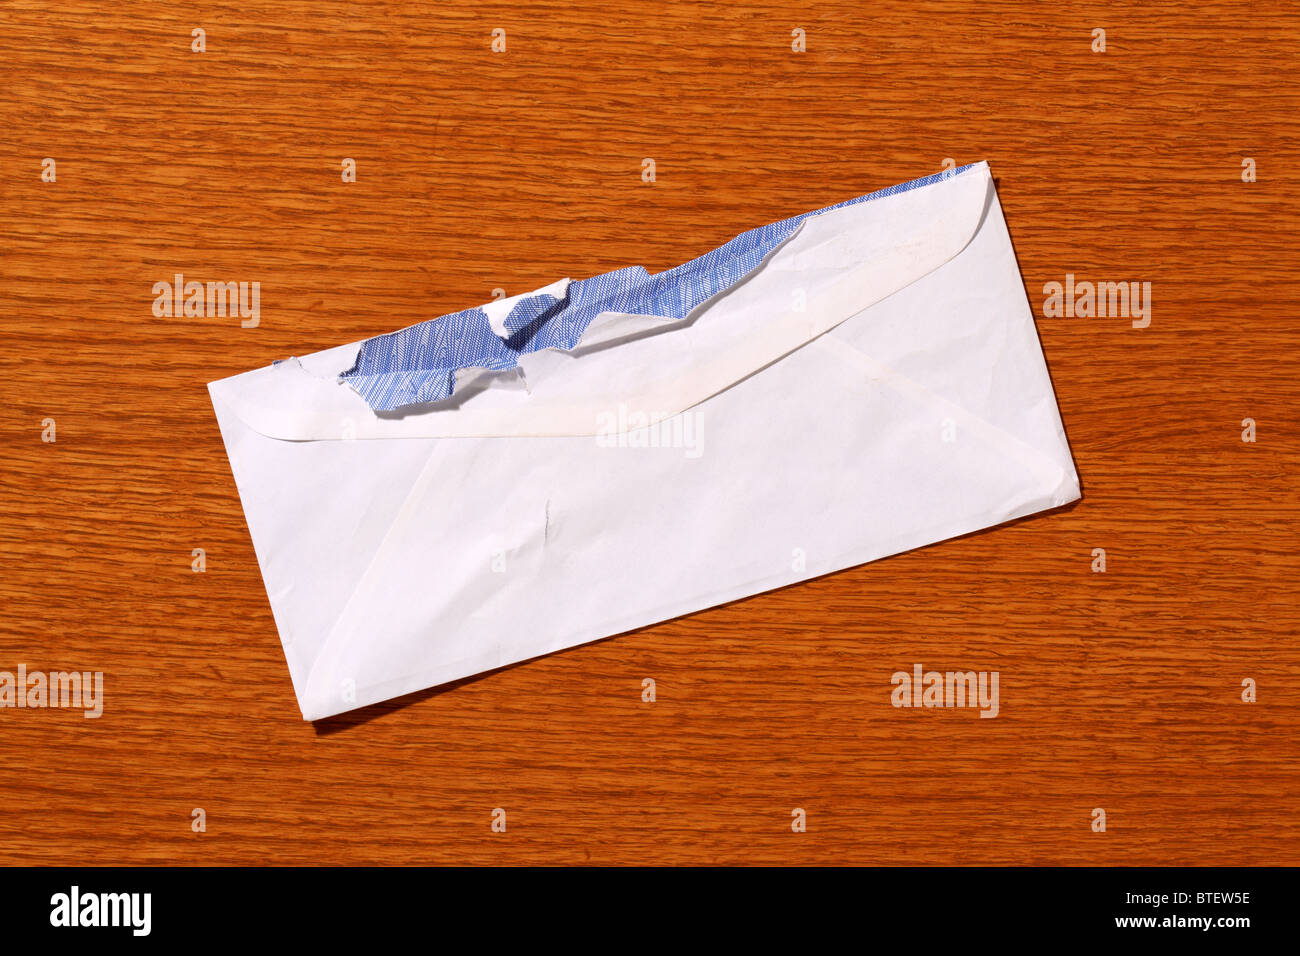 Une enveloppe postale postal utilisé à ouvrir. Fond brun à grain de bois Banque D'Images